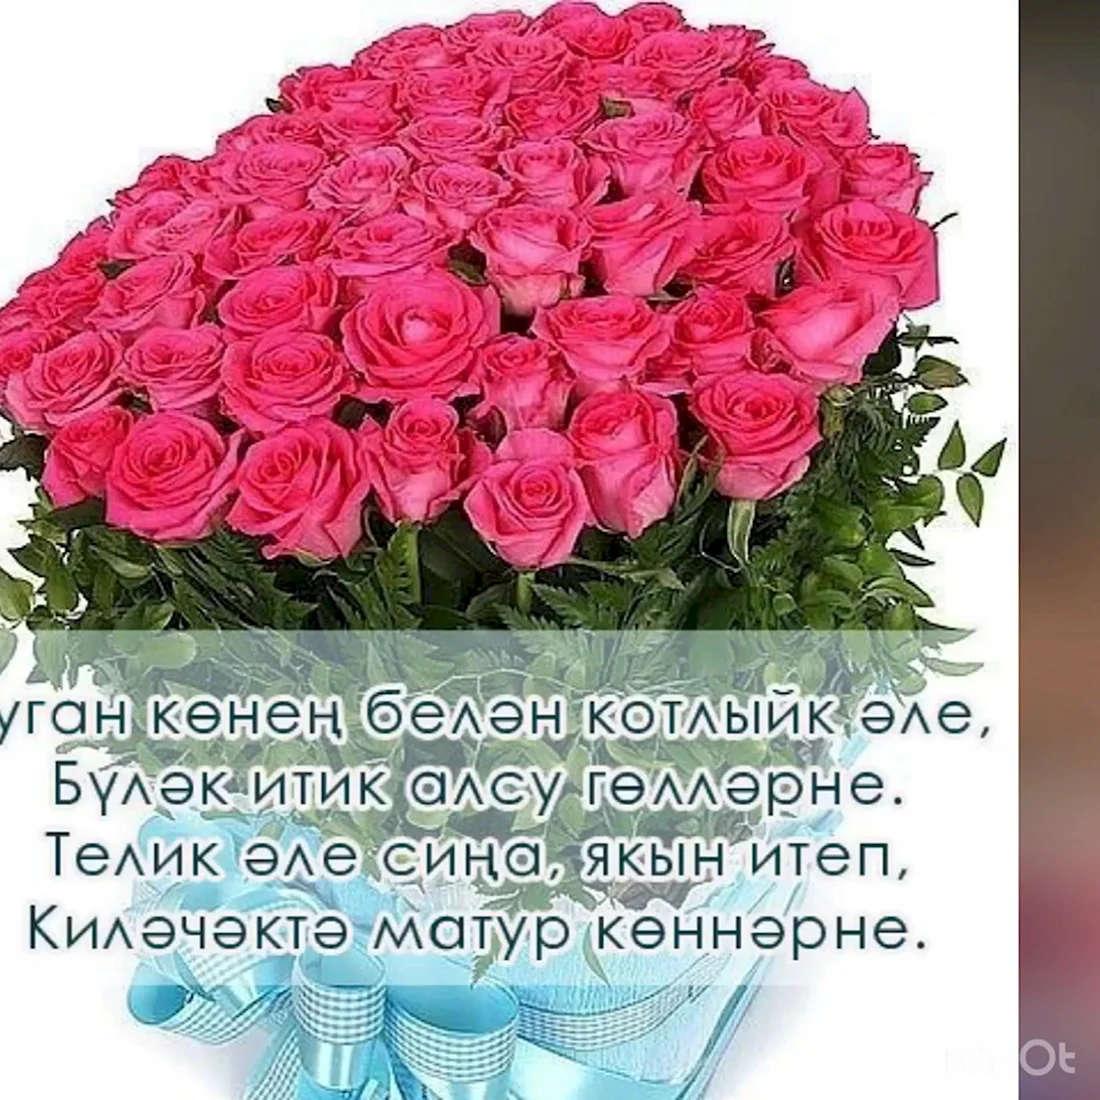 Татарские поздравления с днем рождения. Открытка с поздравлением